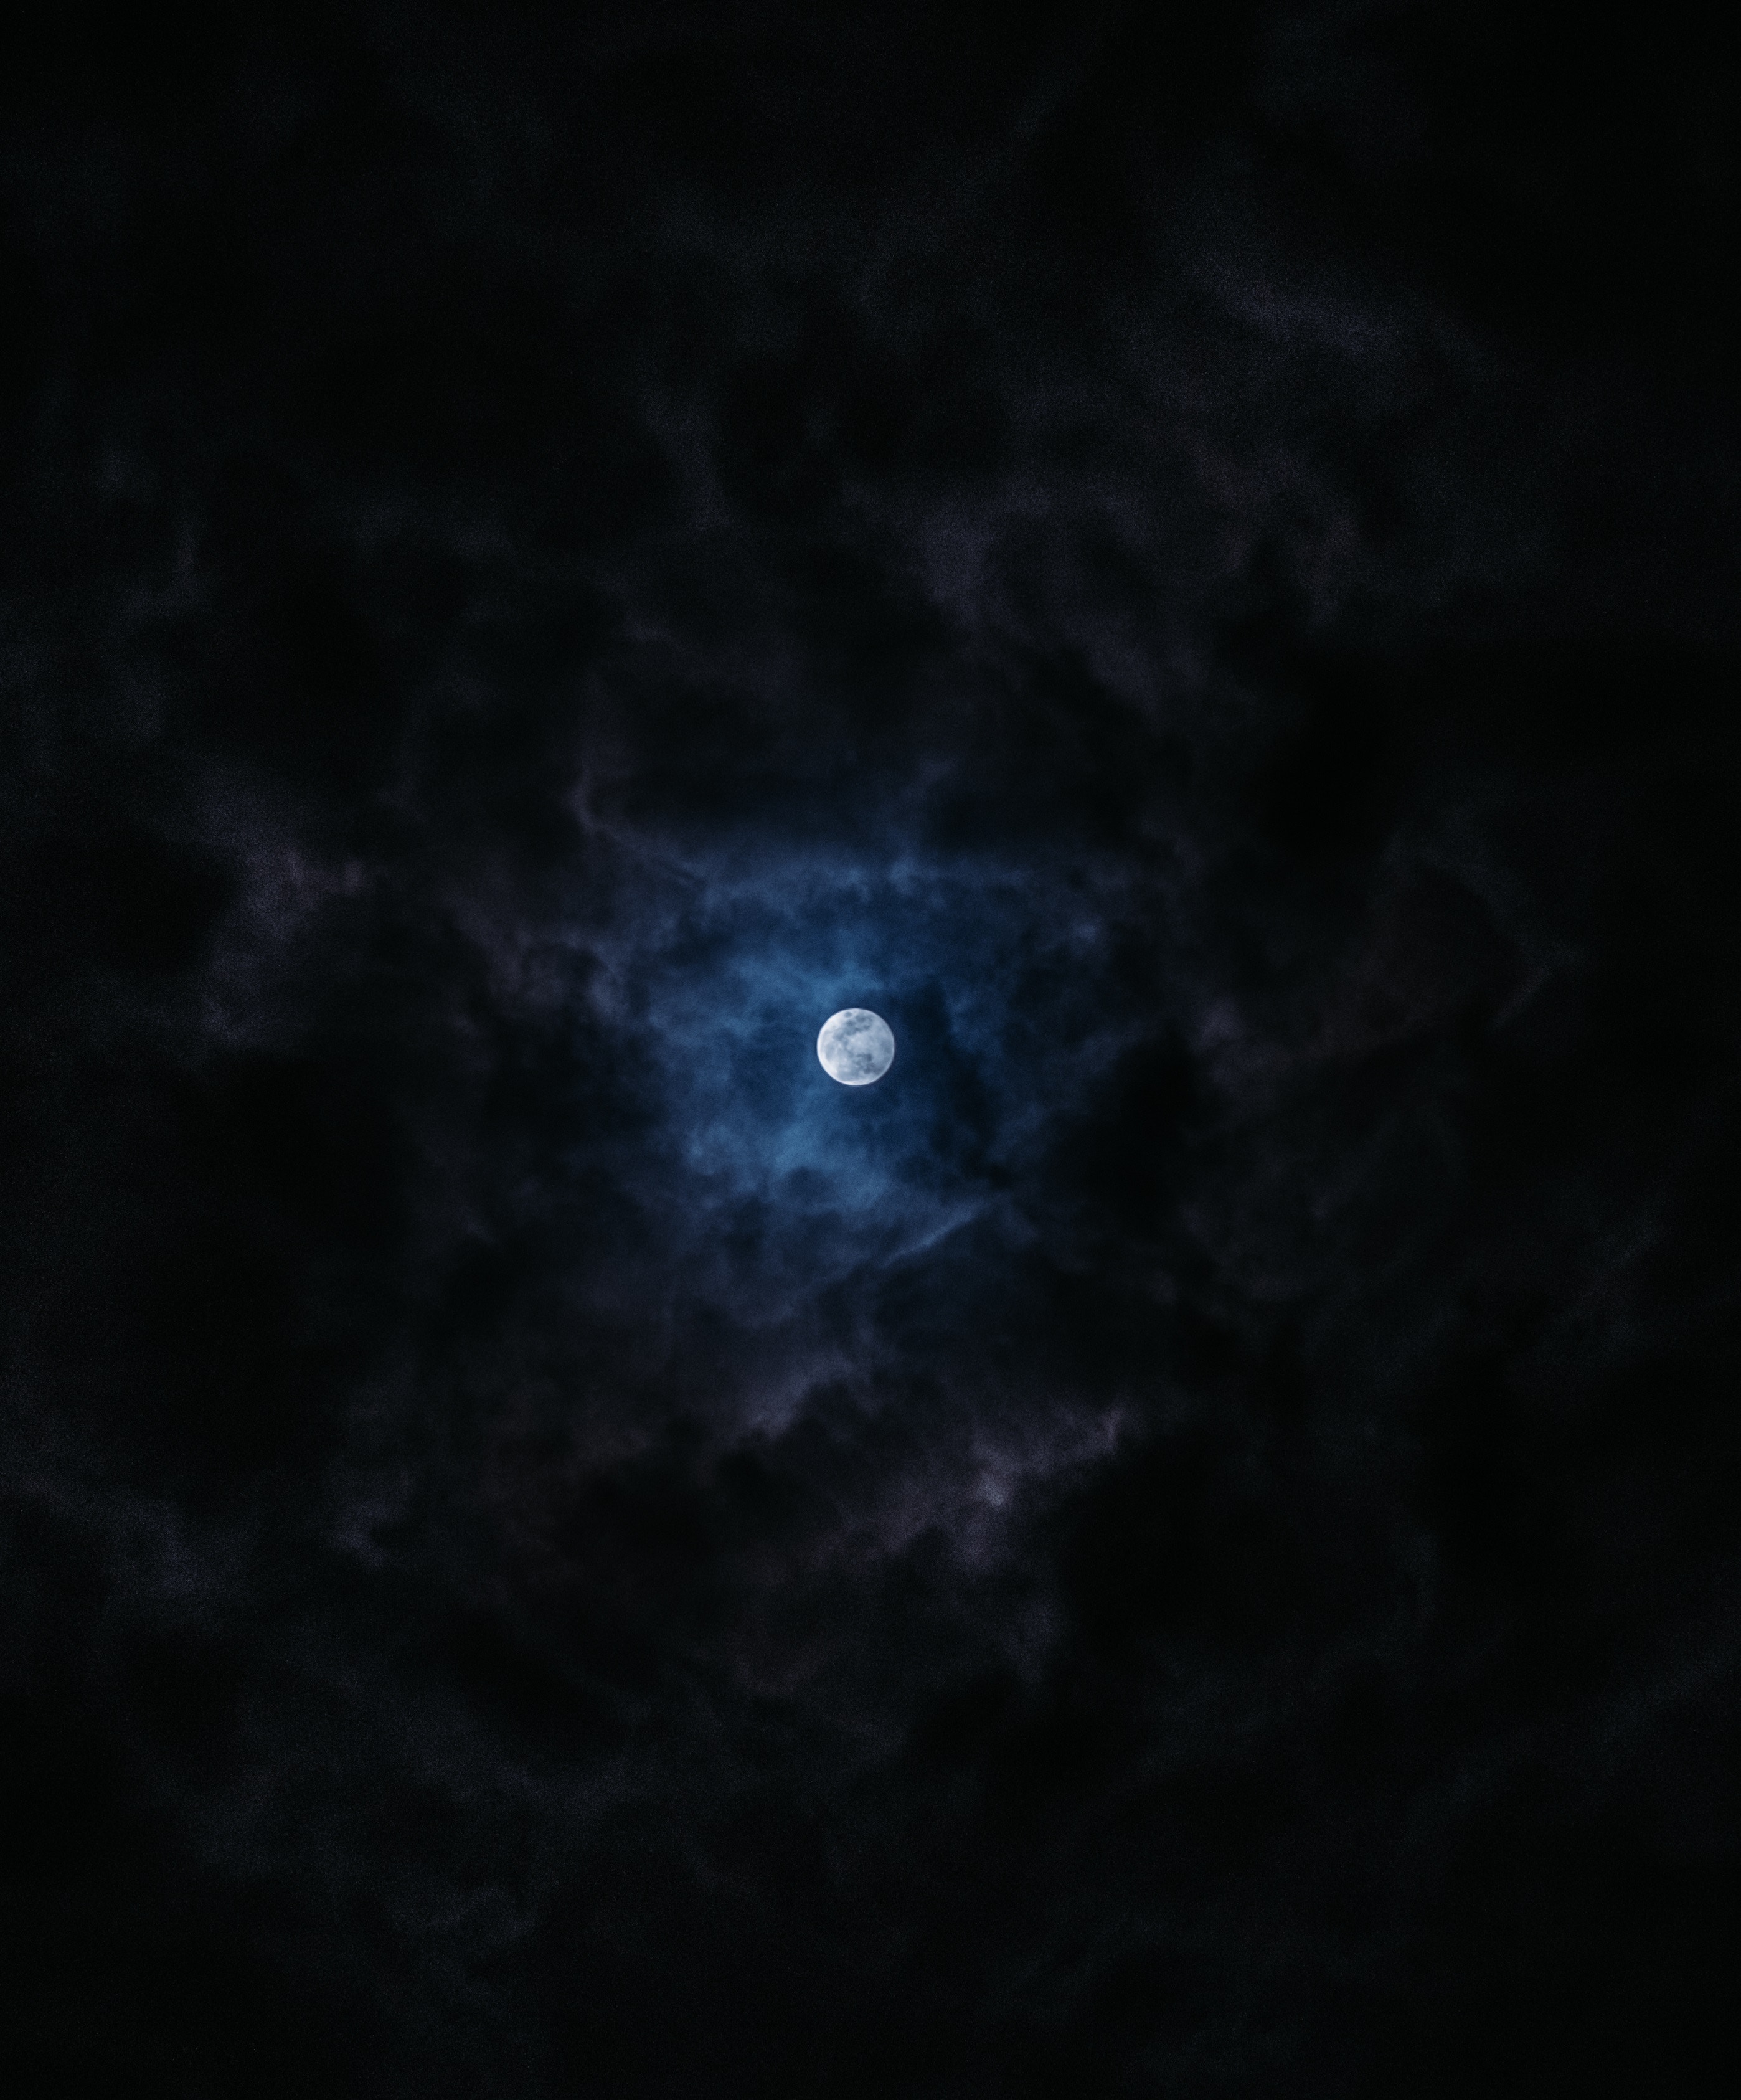 Desktop Backgrounds Moon 